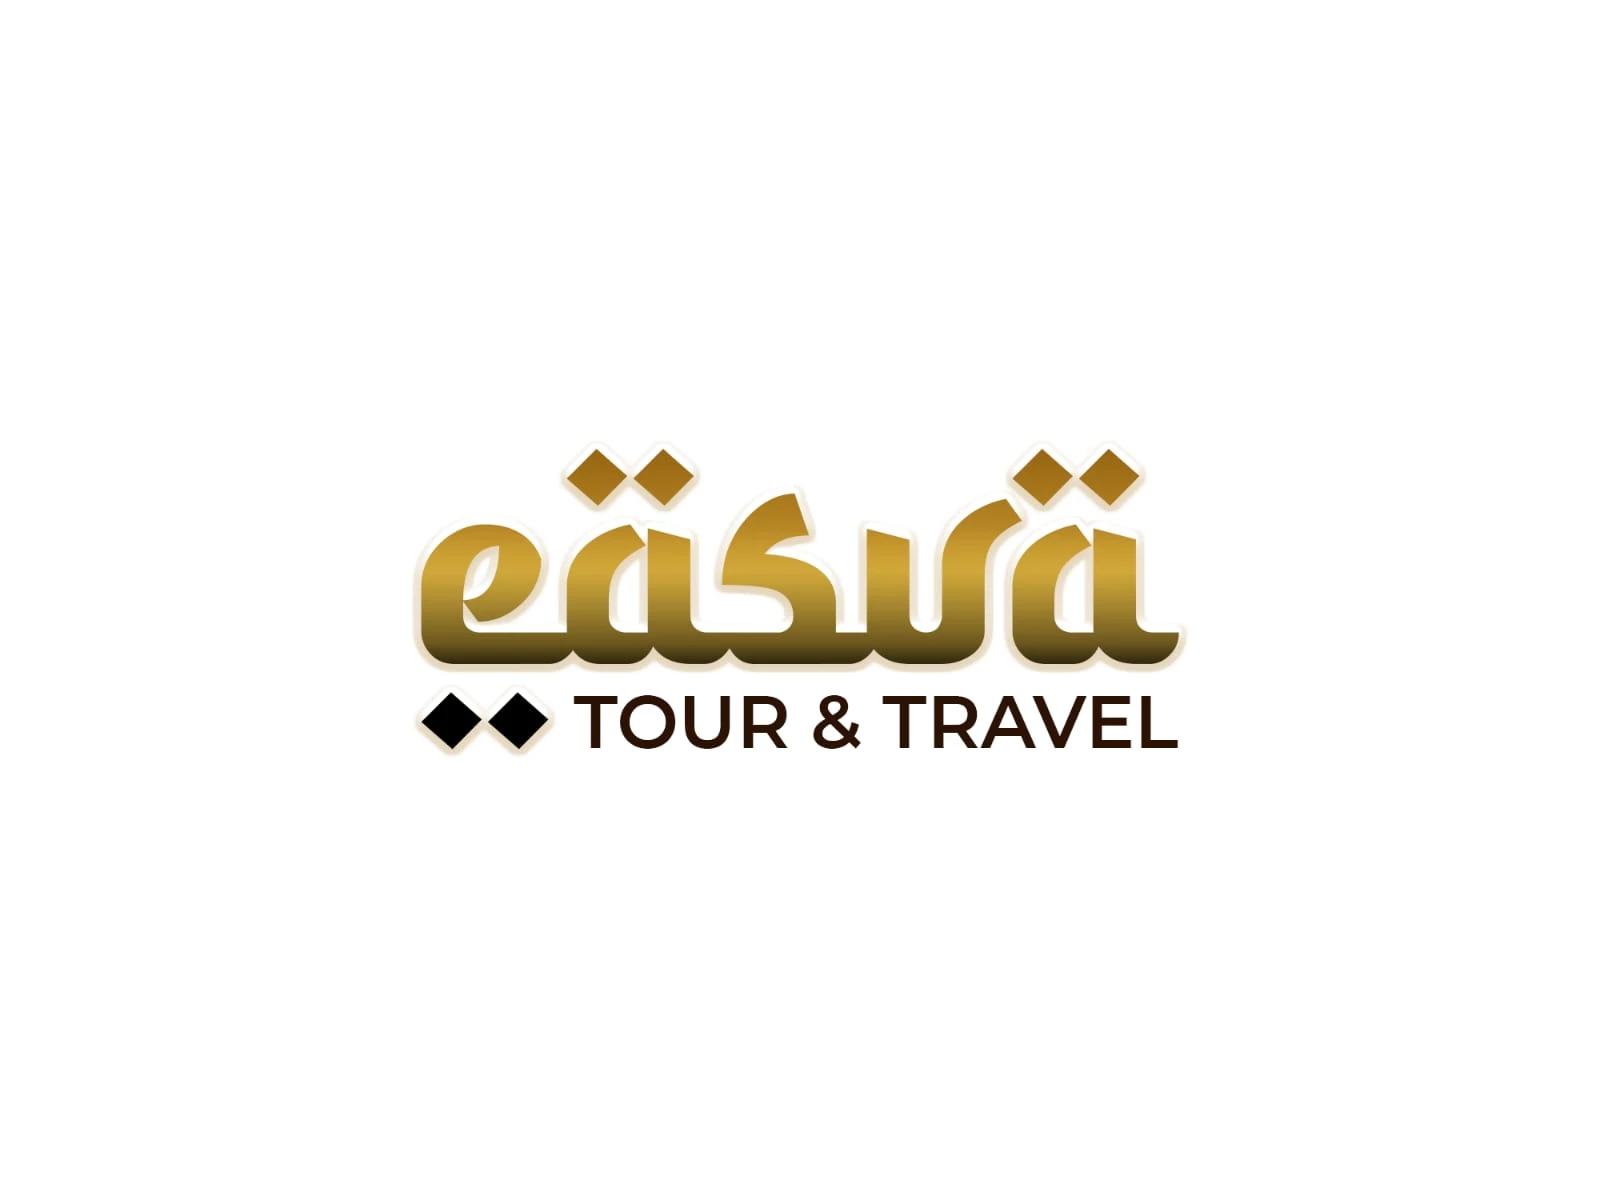 EASVA TOUR